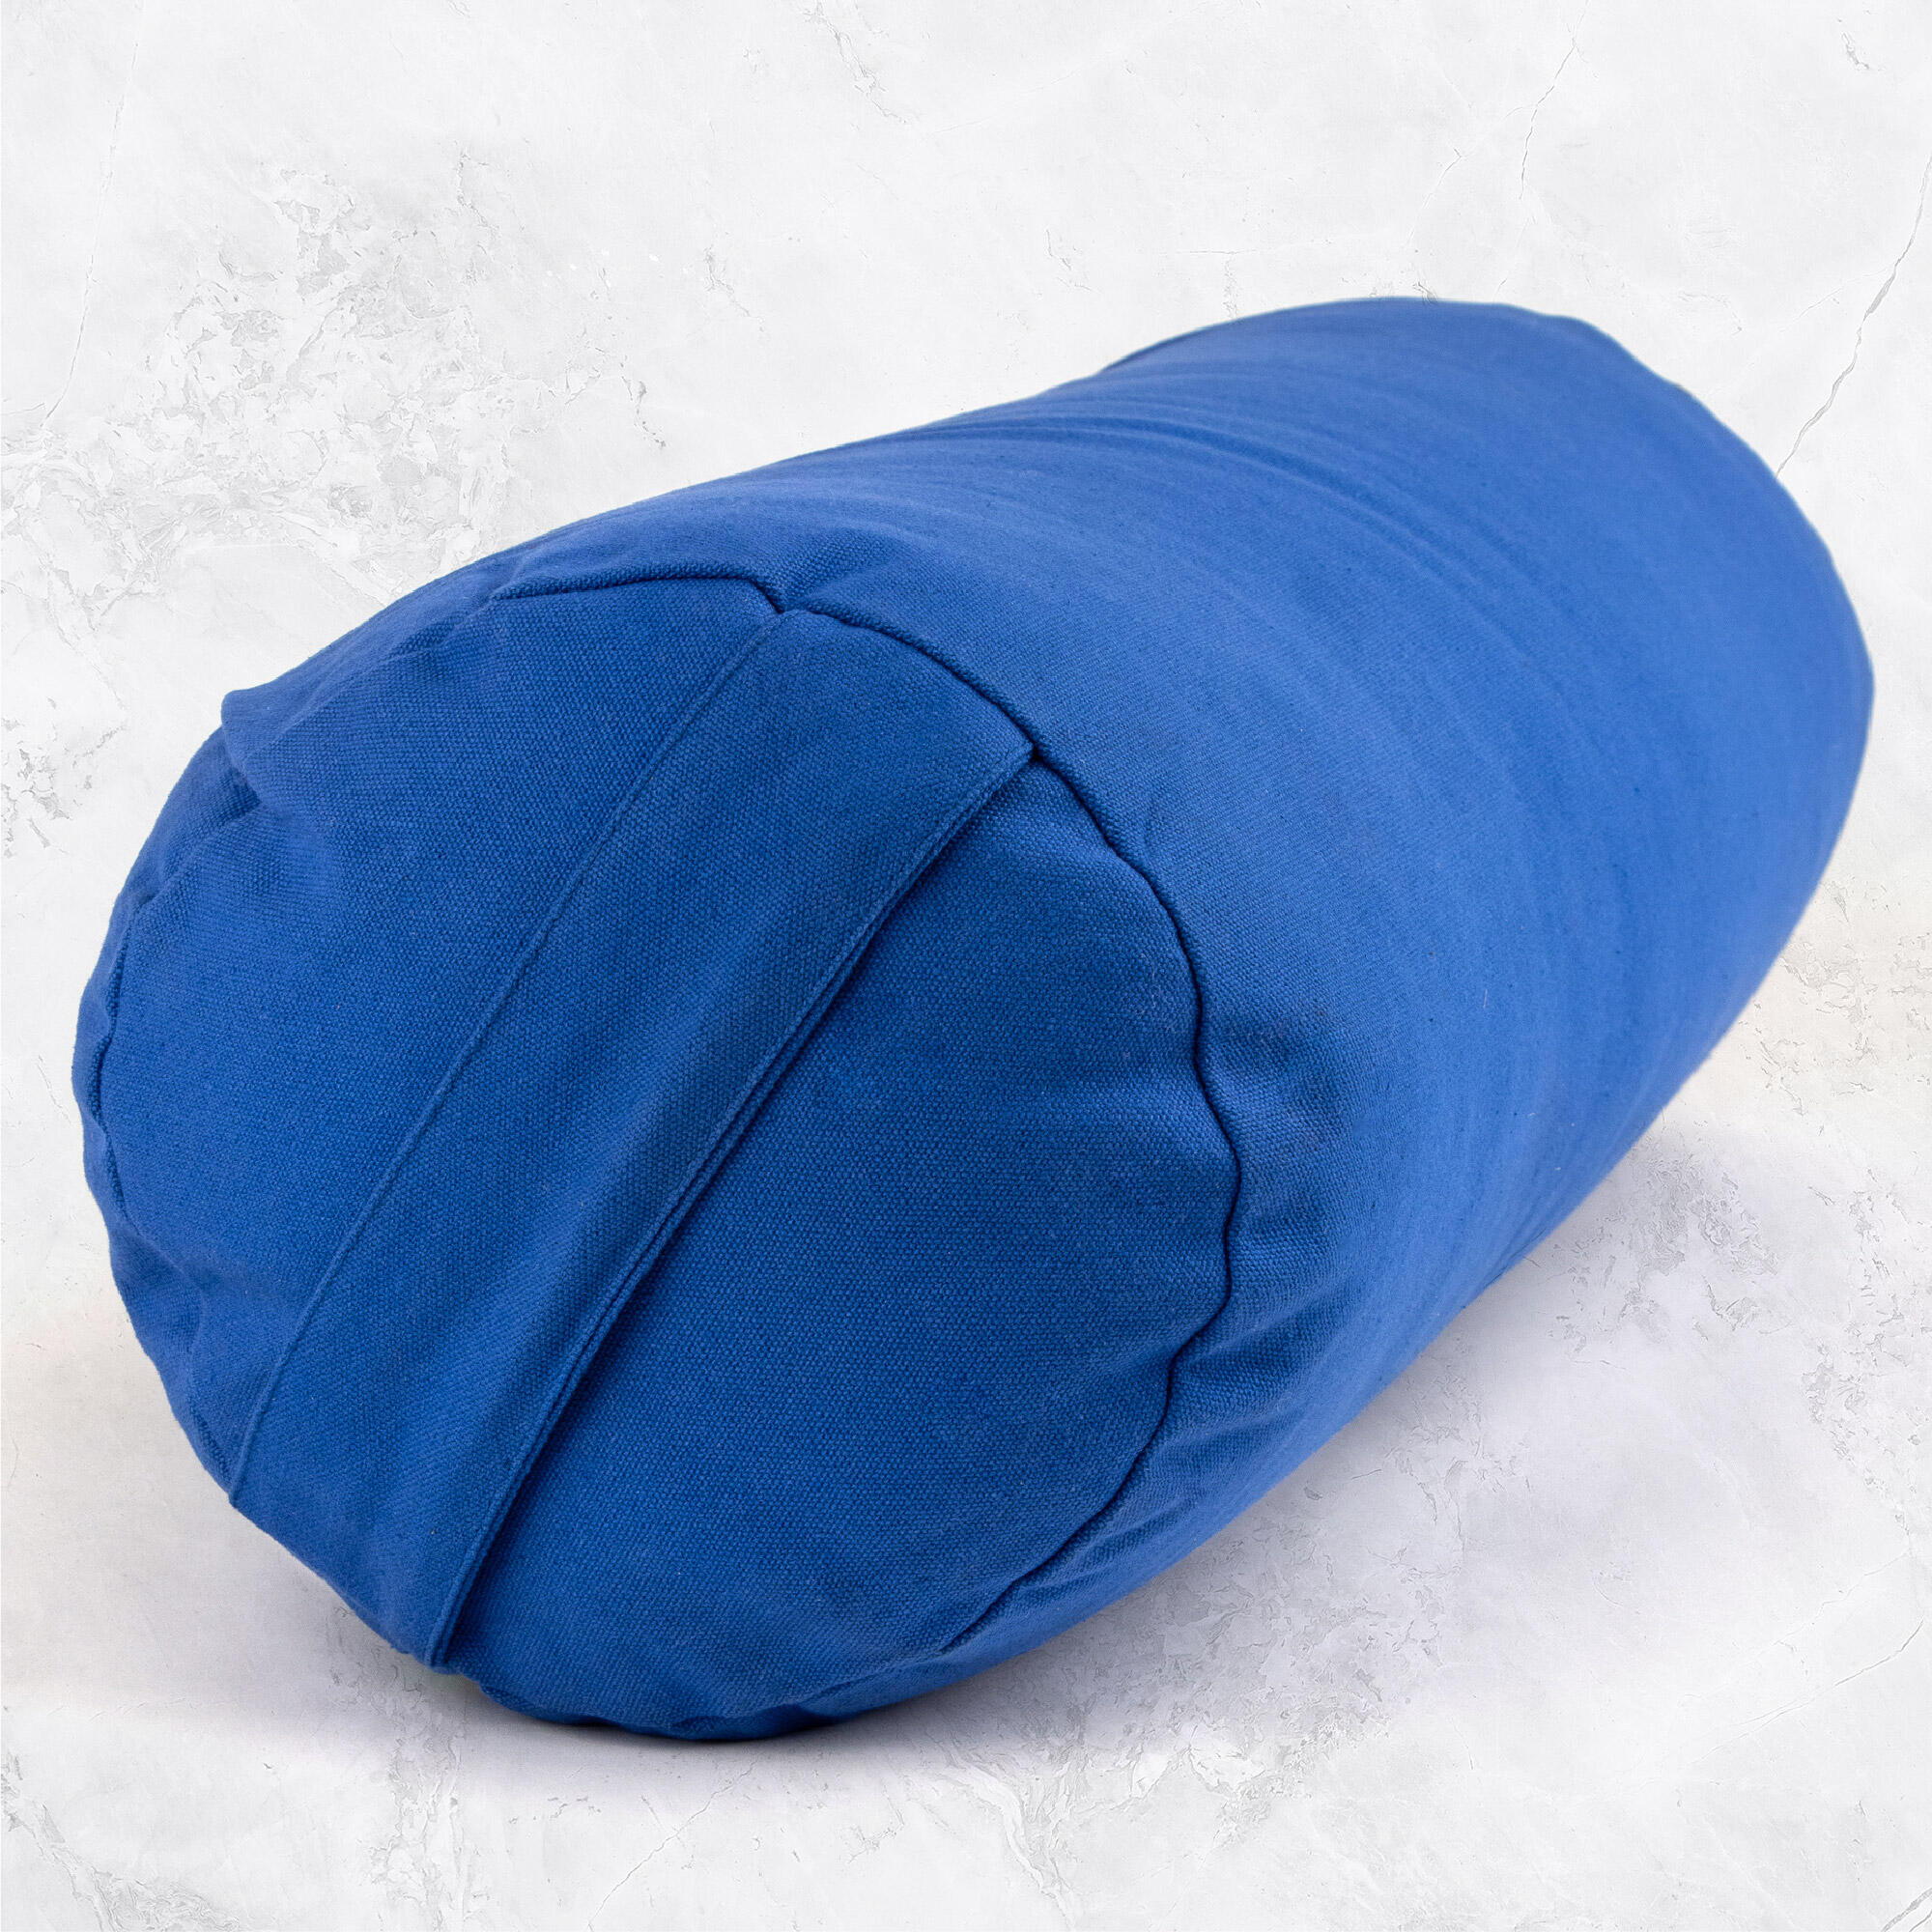 Support Bolster Pillow - Blue 2/7